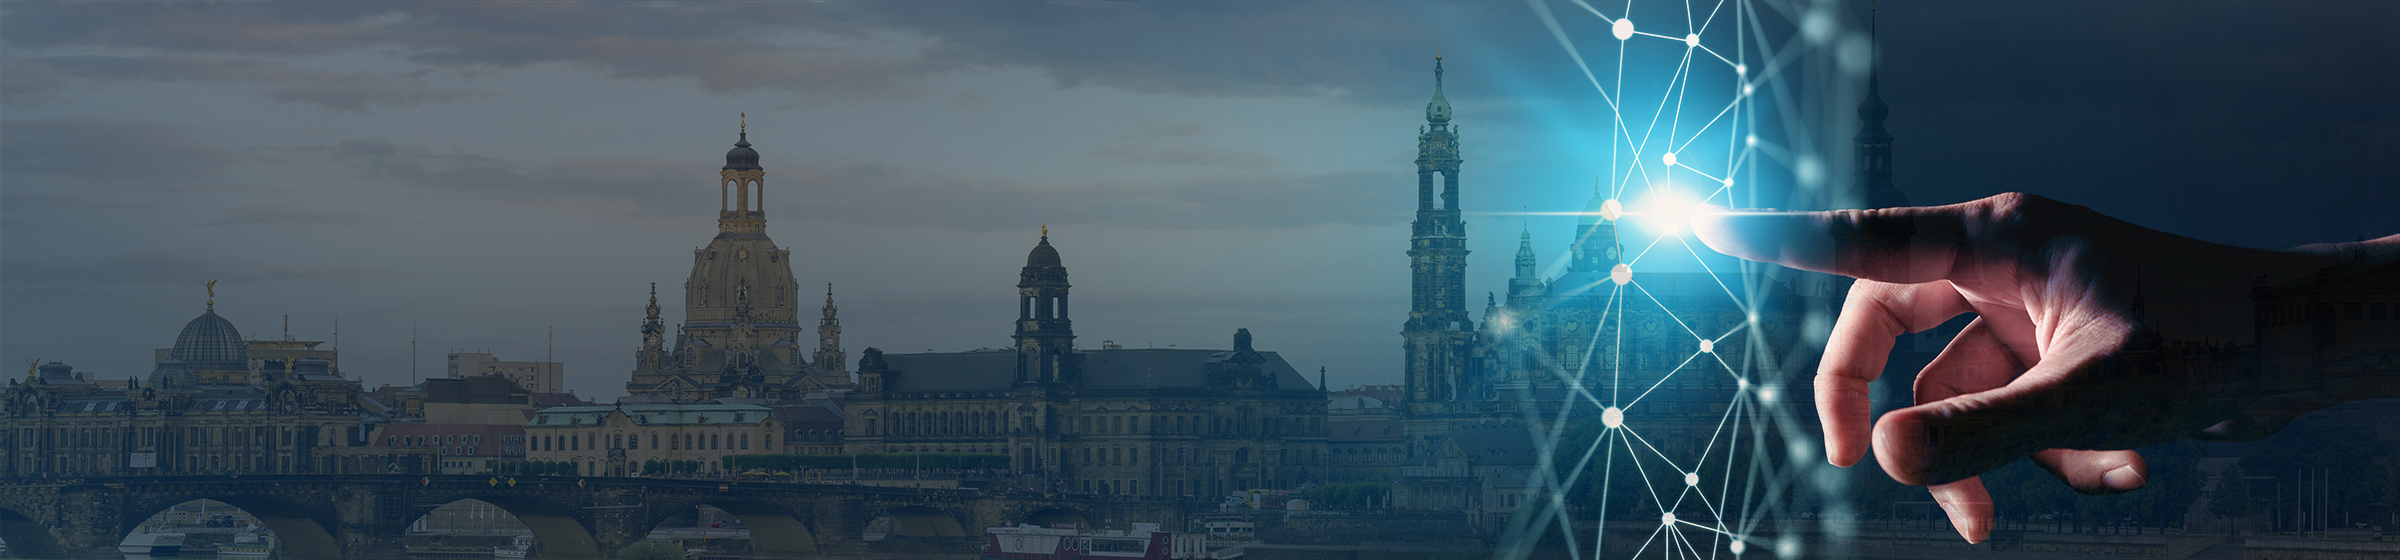 Ein Finger einer Frauenhand klict auf ein blaues Netzsymbol, links davon sieht man die Silhouette der Altstadt Dresdens